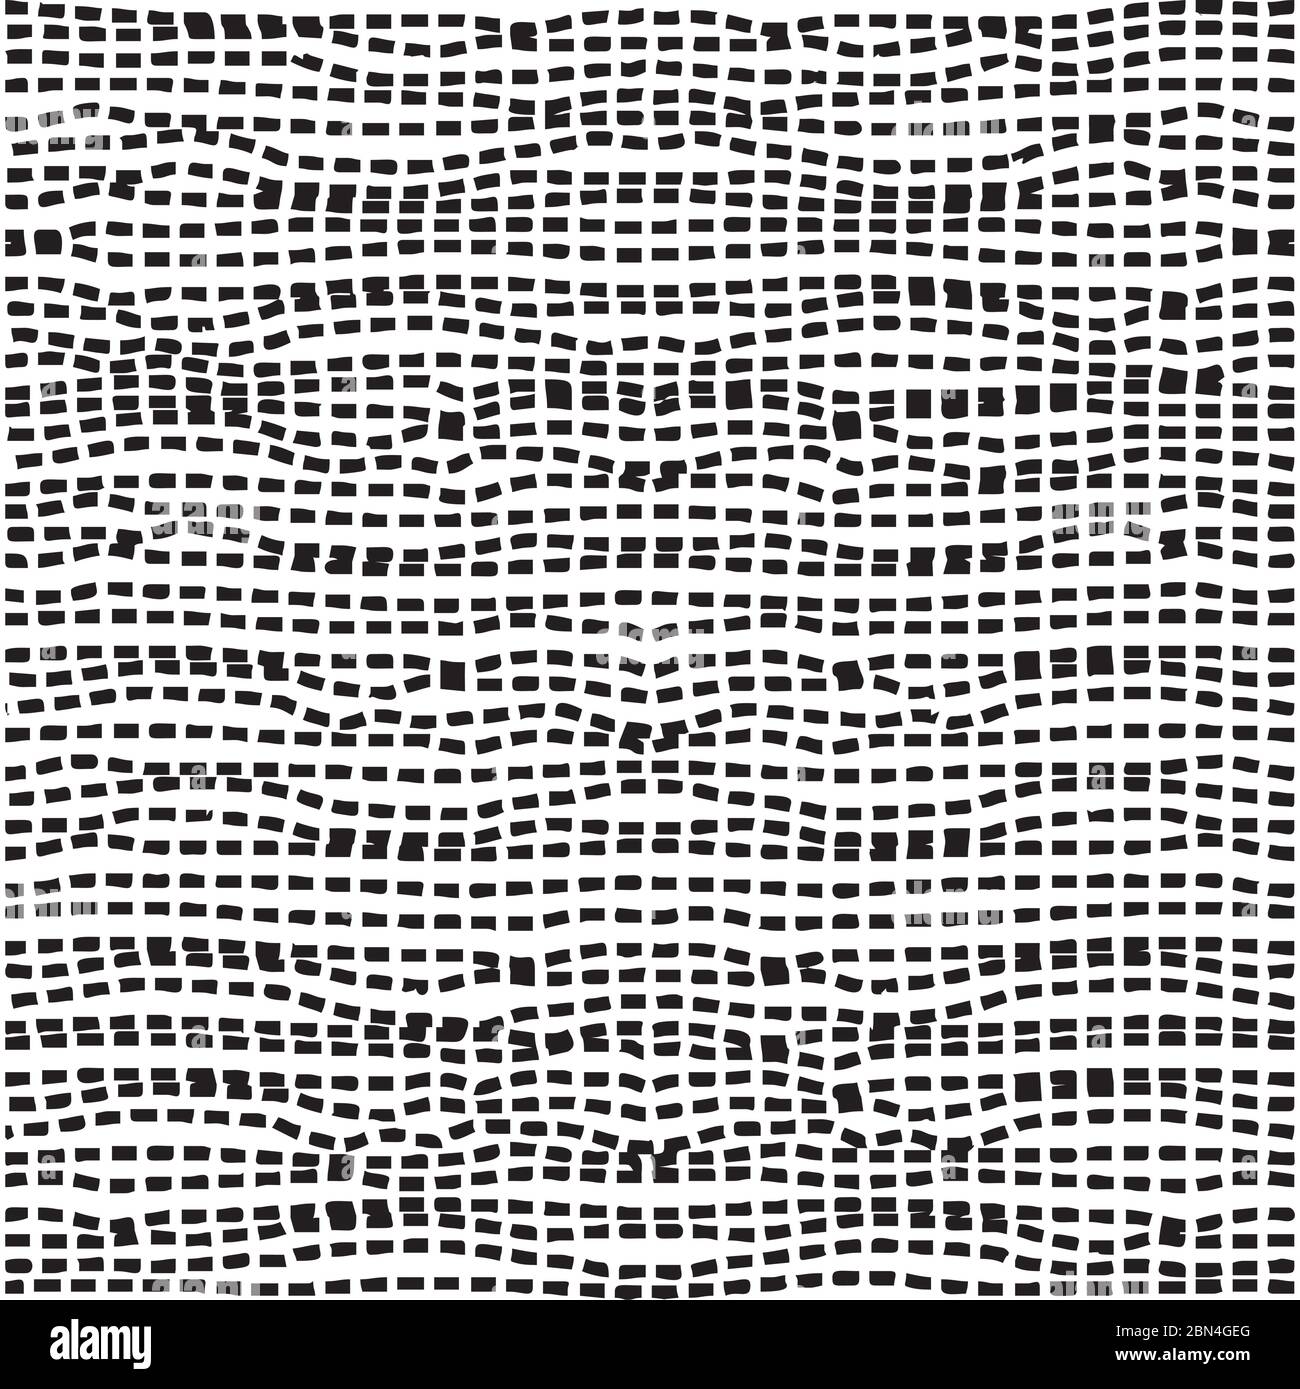 Horizontale gewellte gestrichelte Linien nahtloses Muster. Abstrakte Wickelstruktur in Schwarz-Weiß-Farben. Vektor eps8 Abbildung. Stock Vektor